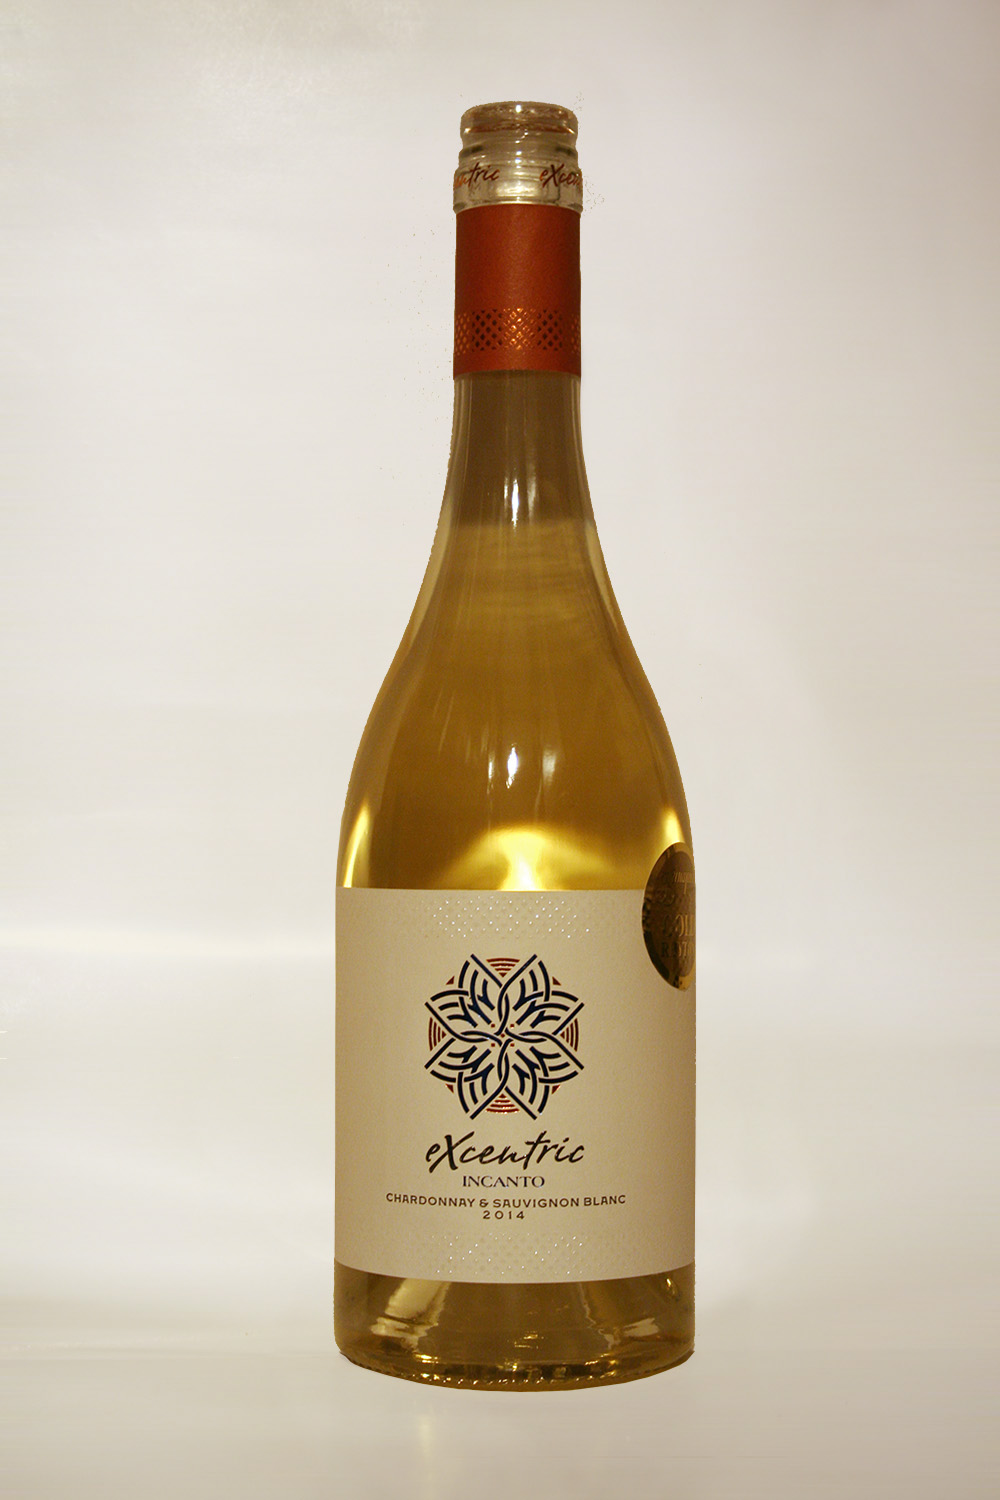 Excentric Incanto Chardonnay & Sauvignon Blanc 2014 - Кликнете на изображението, за да го затворите